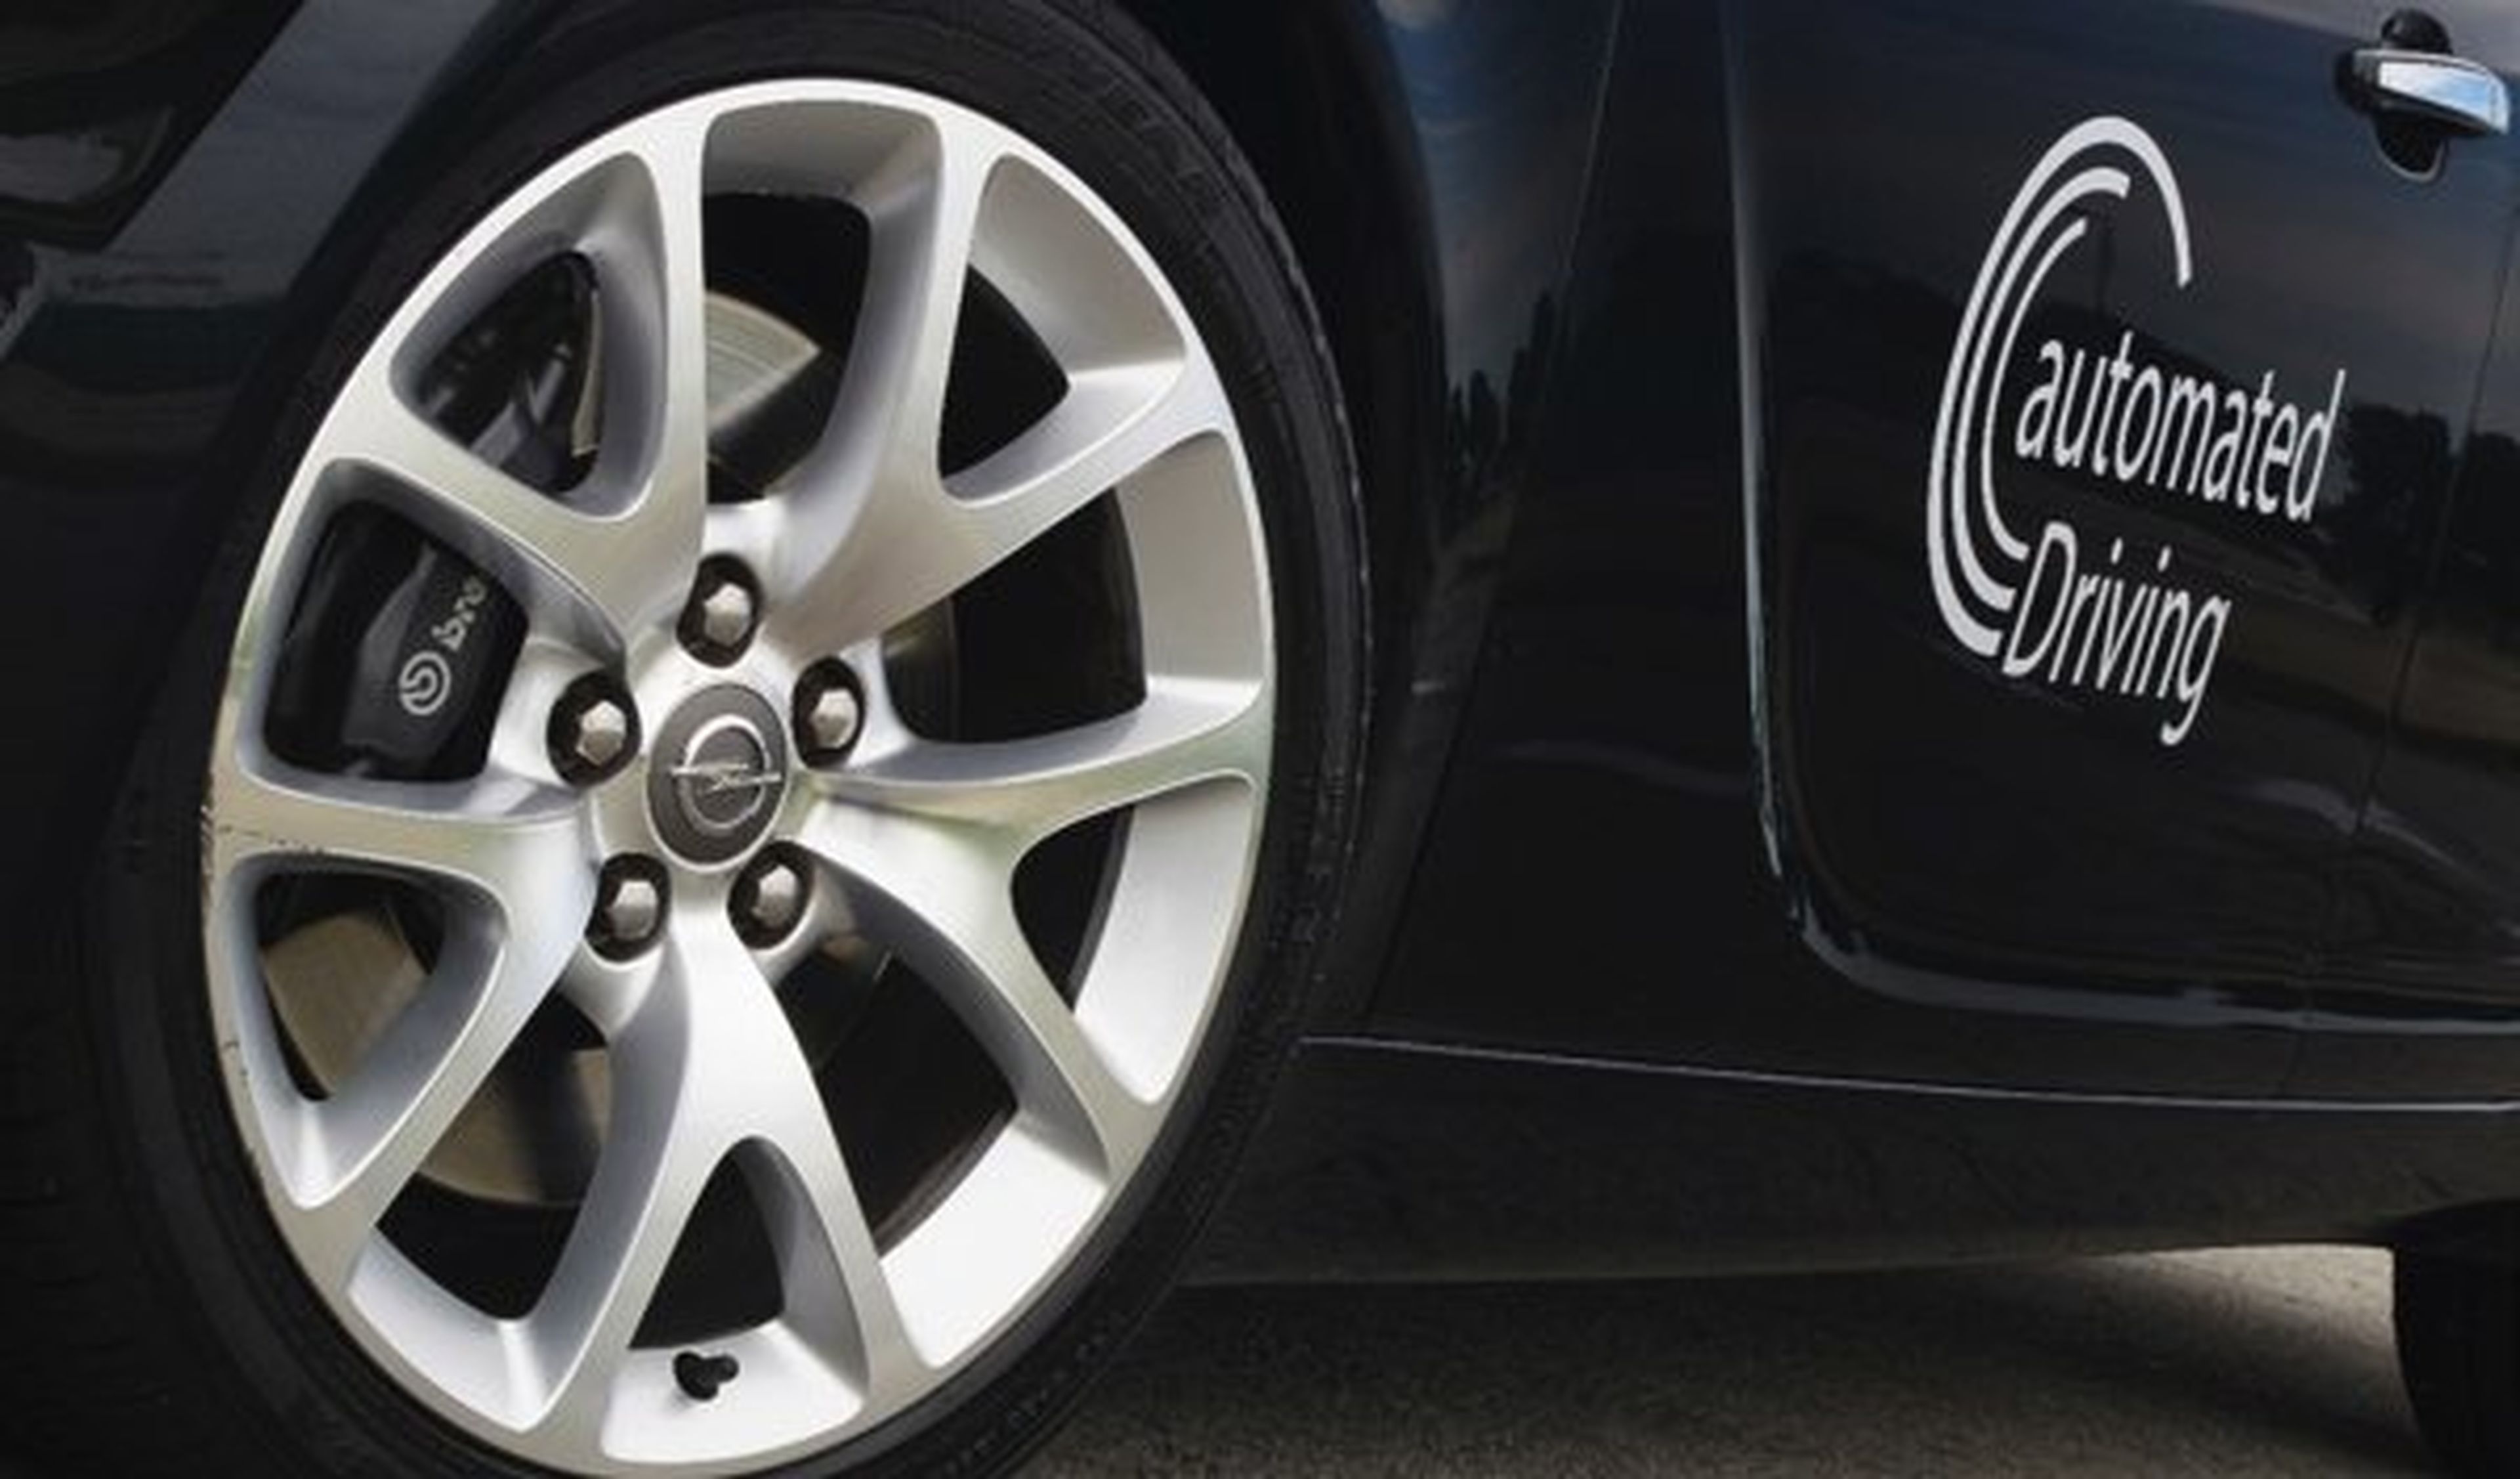 General Motors y Opel apuestan por la conducción autónoma